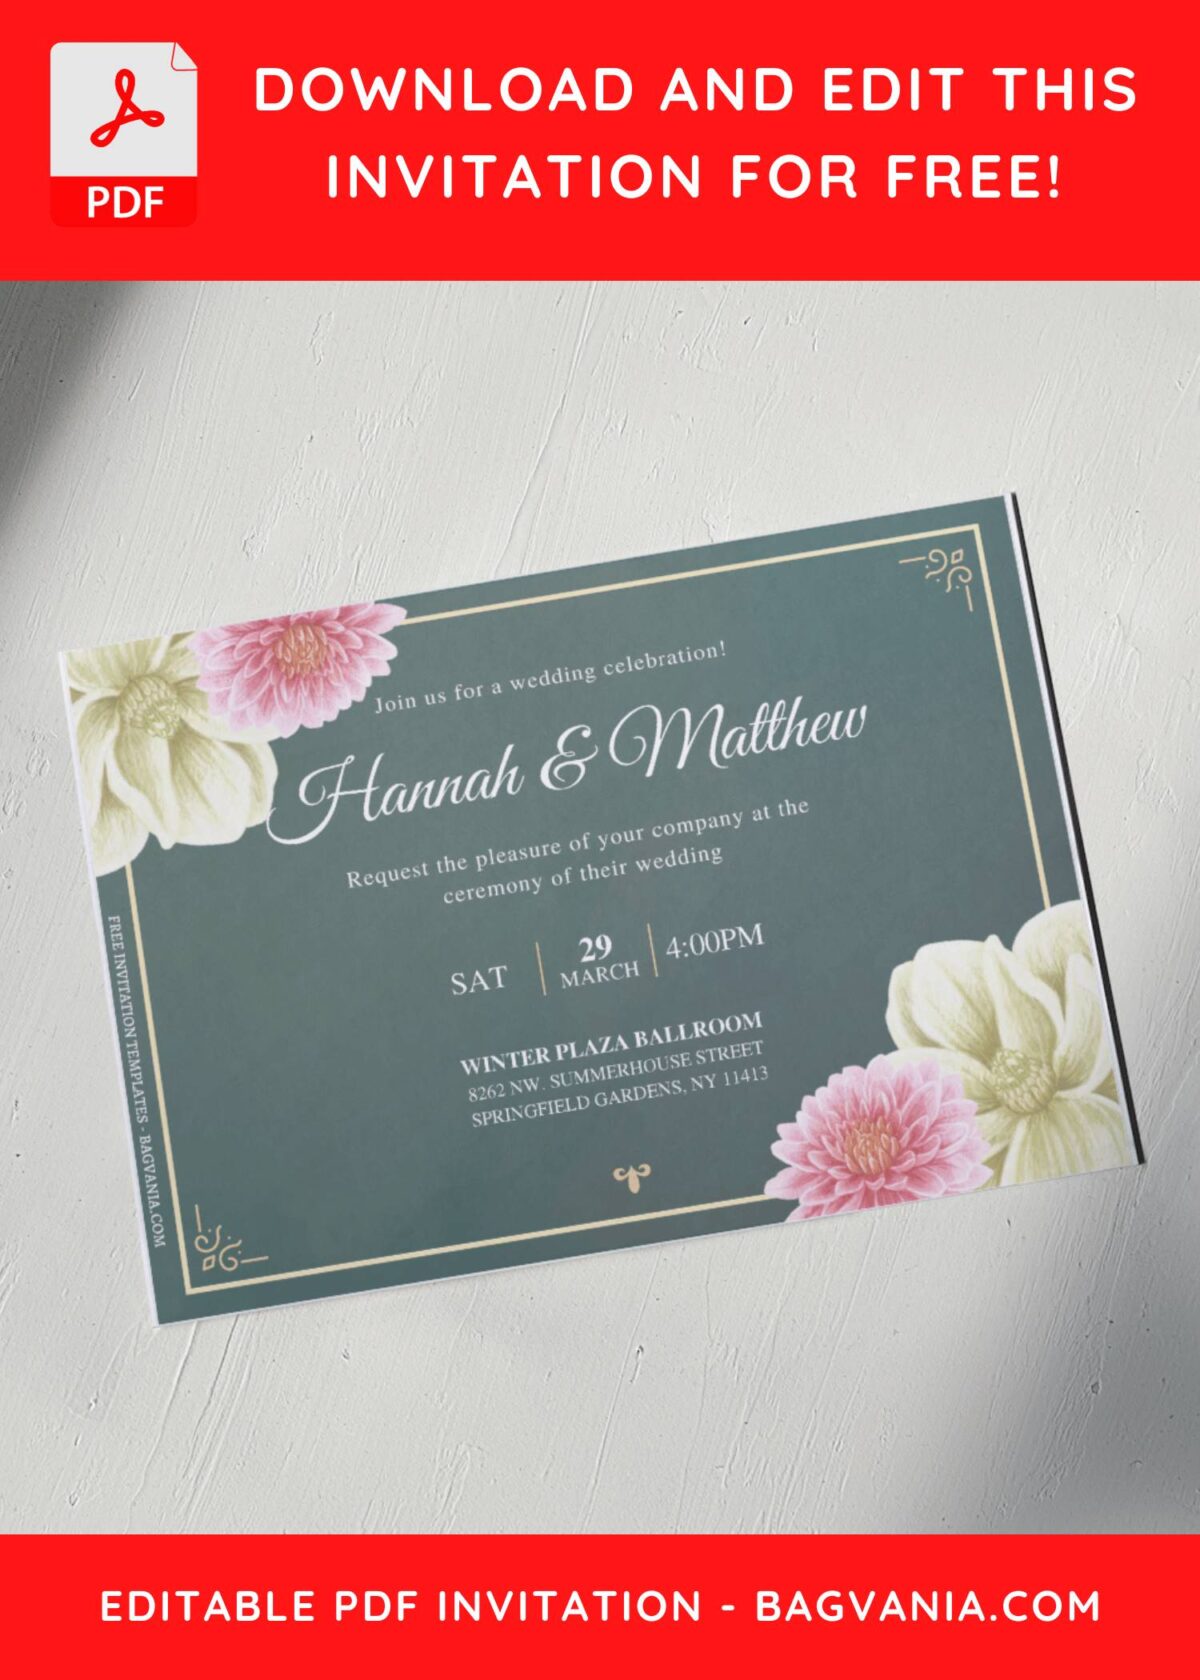 (Free Editable PDF) Timeless Magnolia And Dahlia Wedding Invitation Templates E